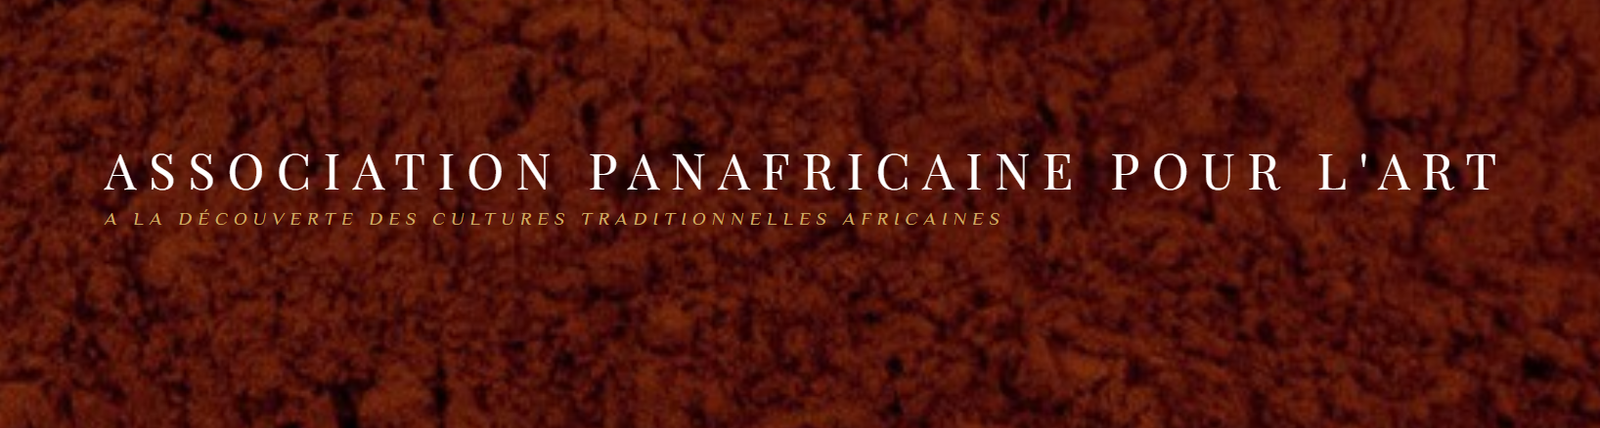 ASSOCIATION PANAFRICAINE POUR L'ART 